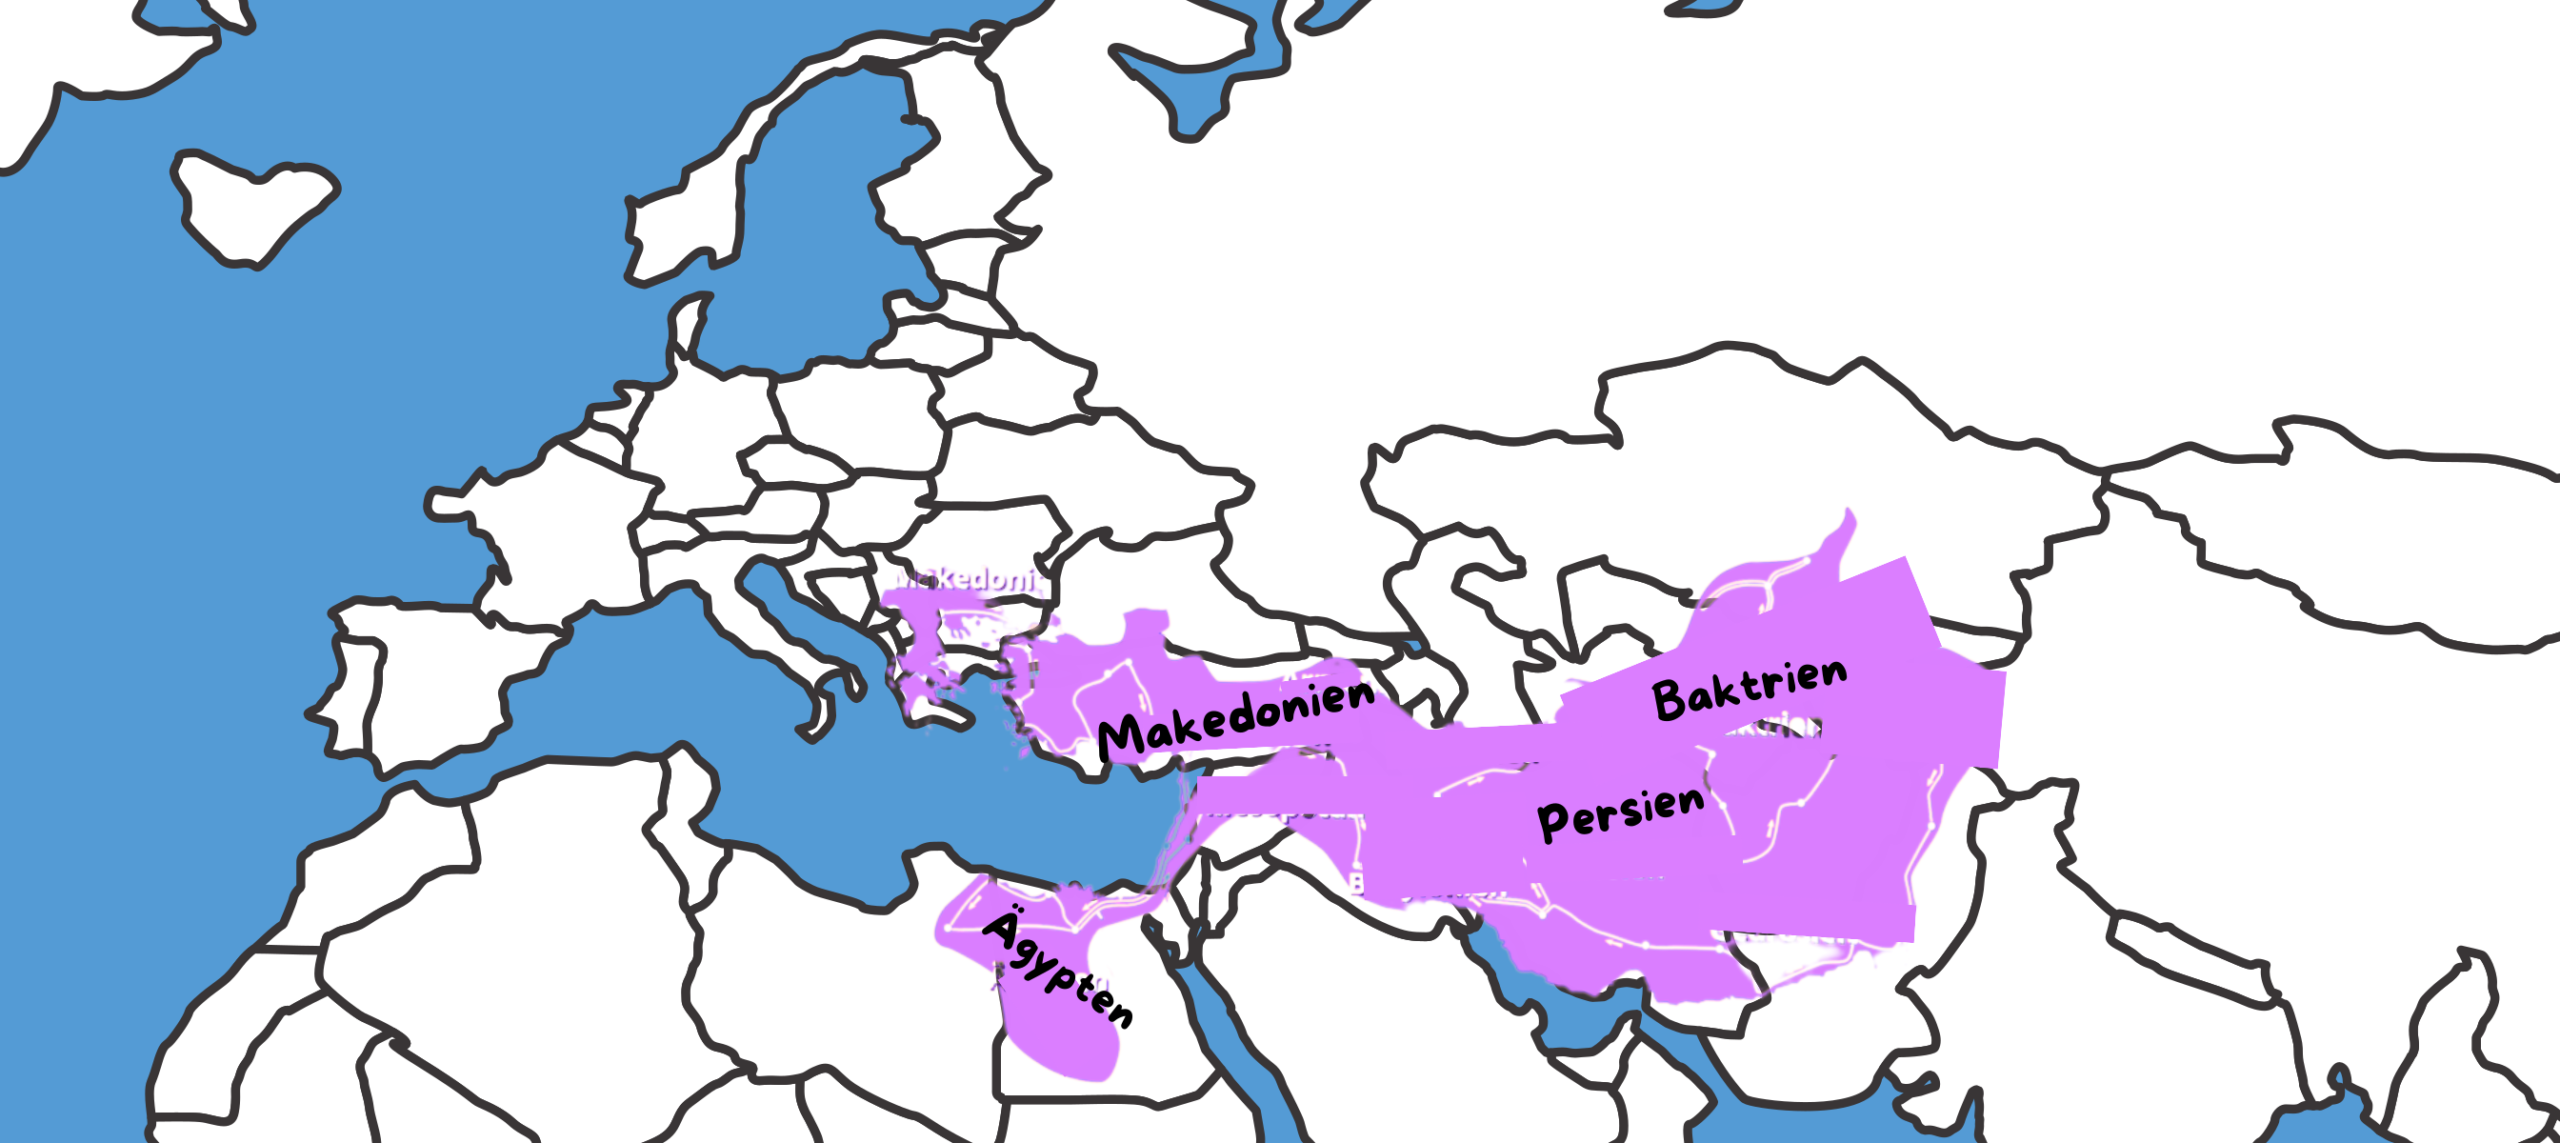 Das ist eine ungefähre darstellung wie das Reich von Alexanders aussach auf der heutige Landkarte